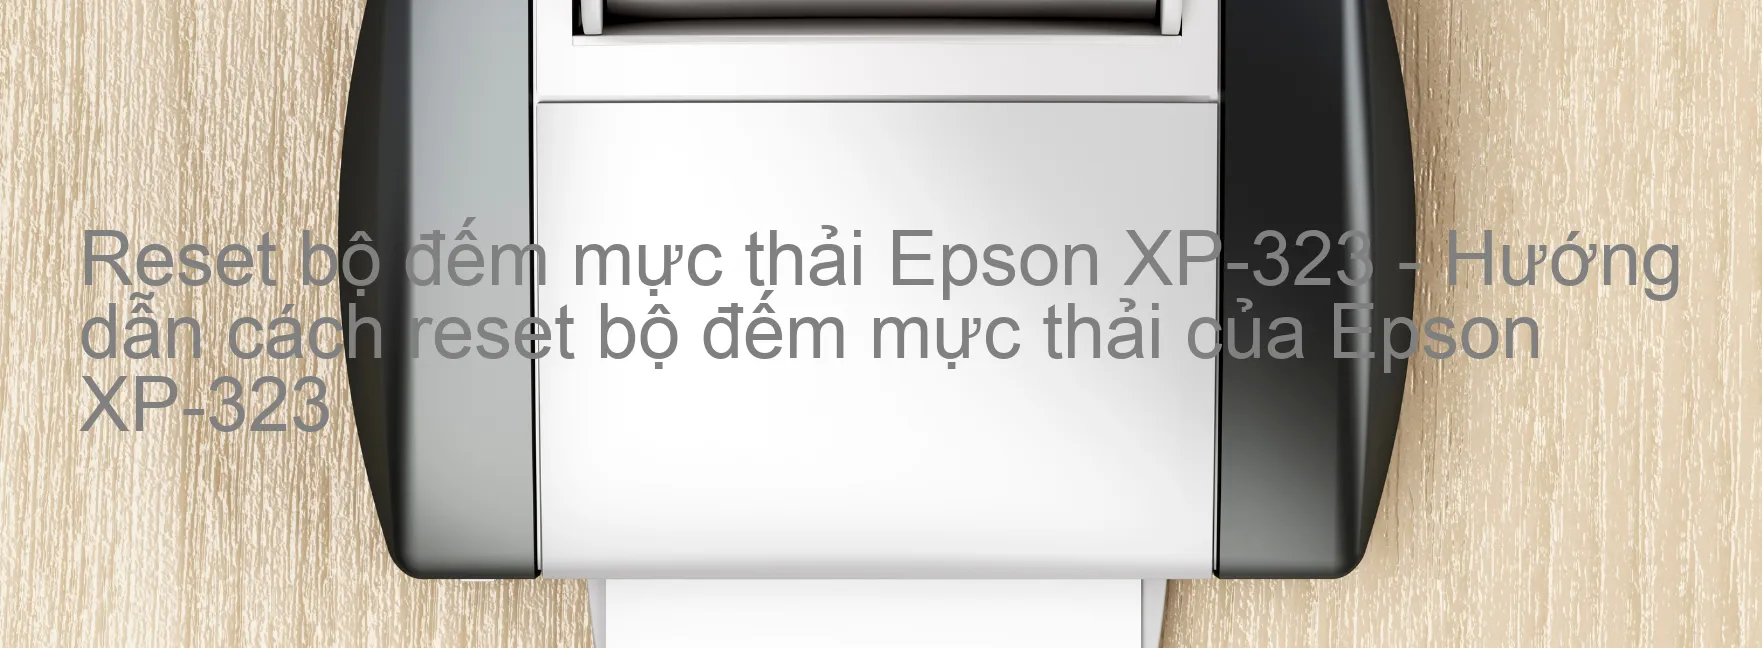 Reset bộ đếm mực thải Epson XP-323 - Hướng dẫn cách reset bộ đếm mực thải của Epson XP-323